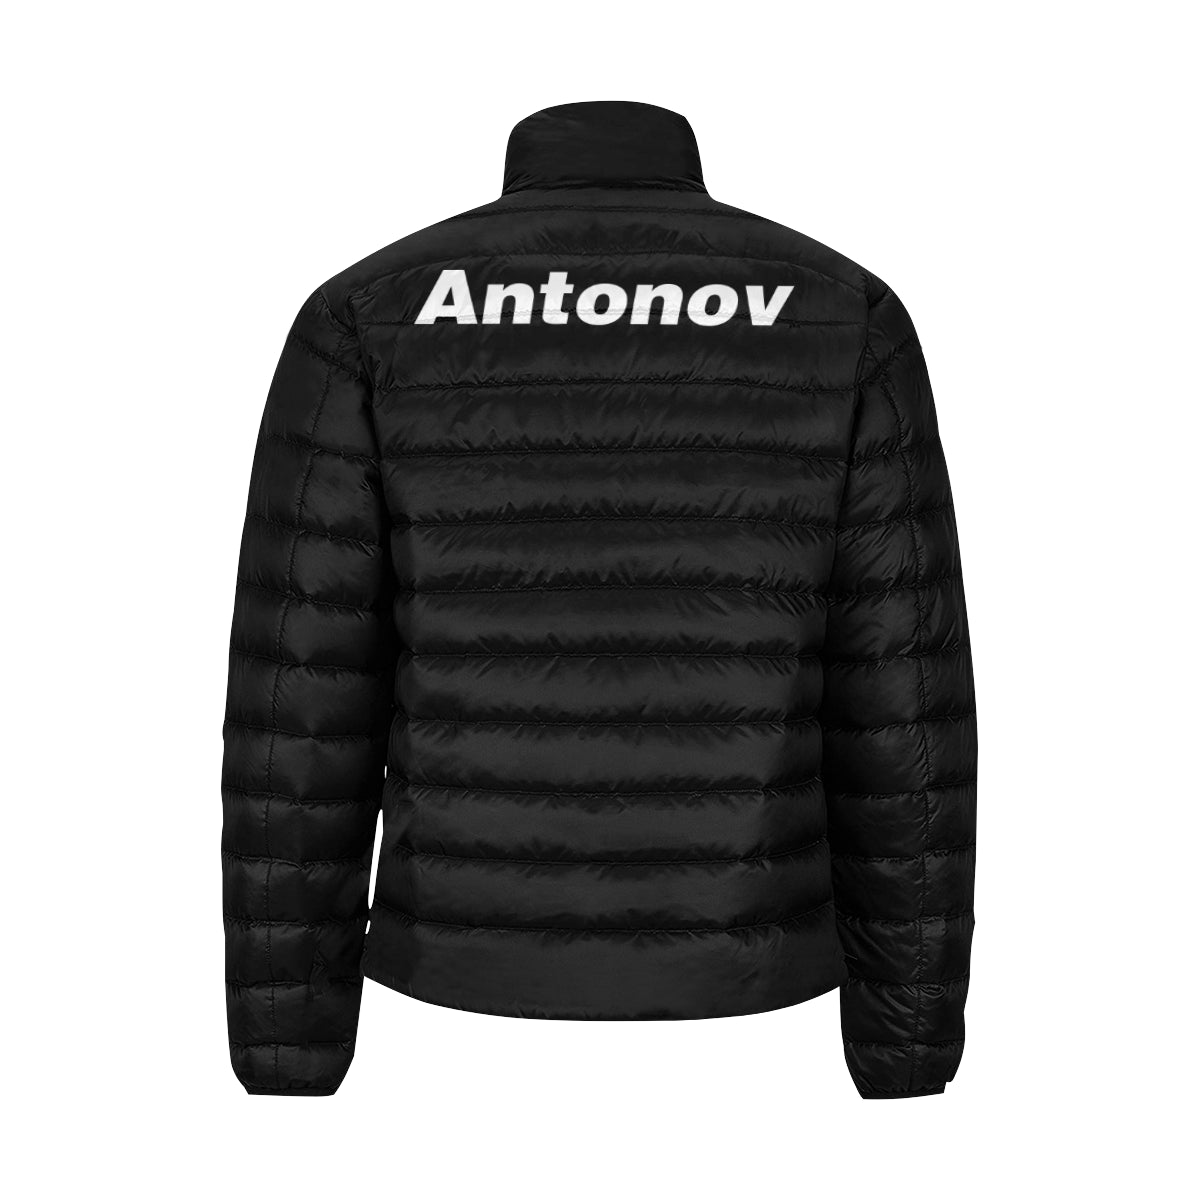 ANTONOV Men's Stand Collar Padded Jacket e-joyer